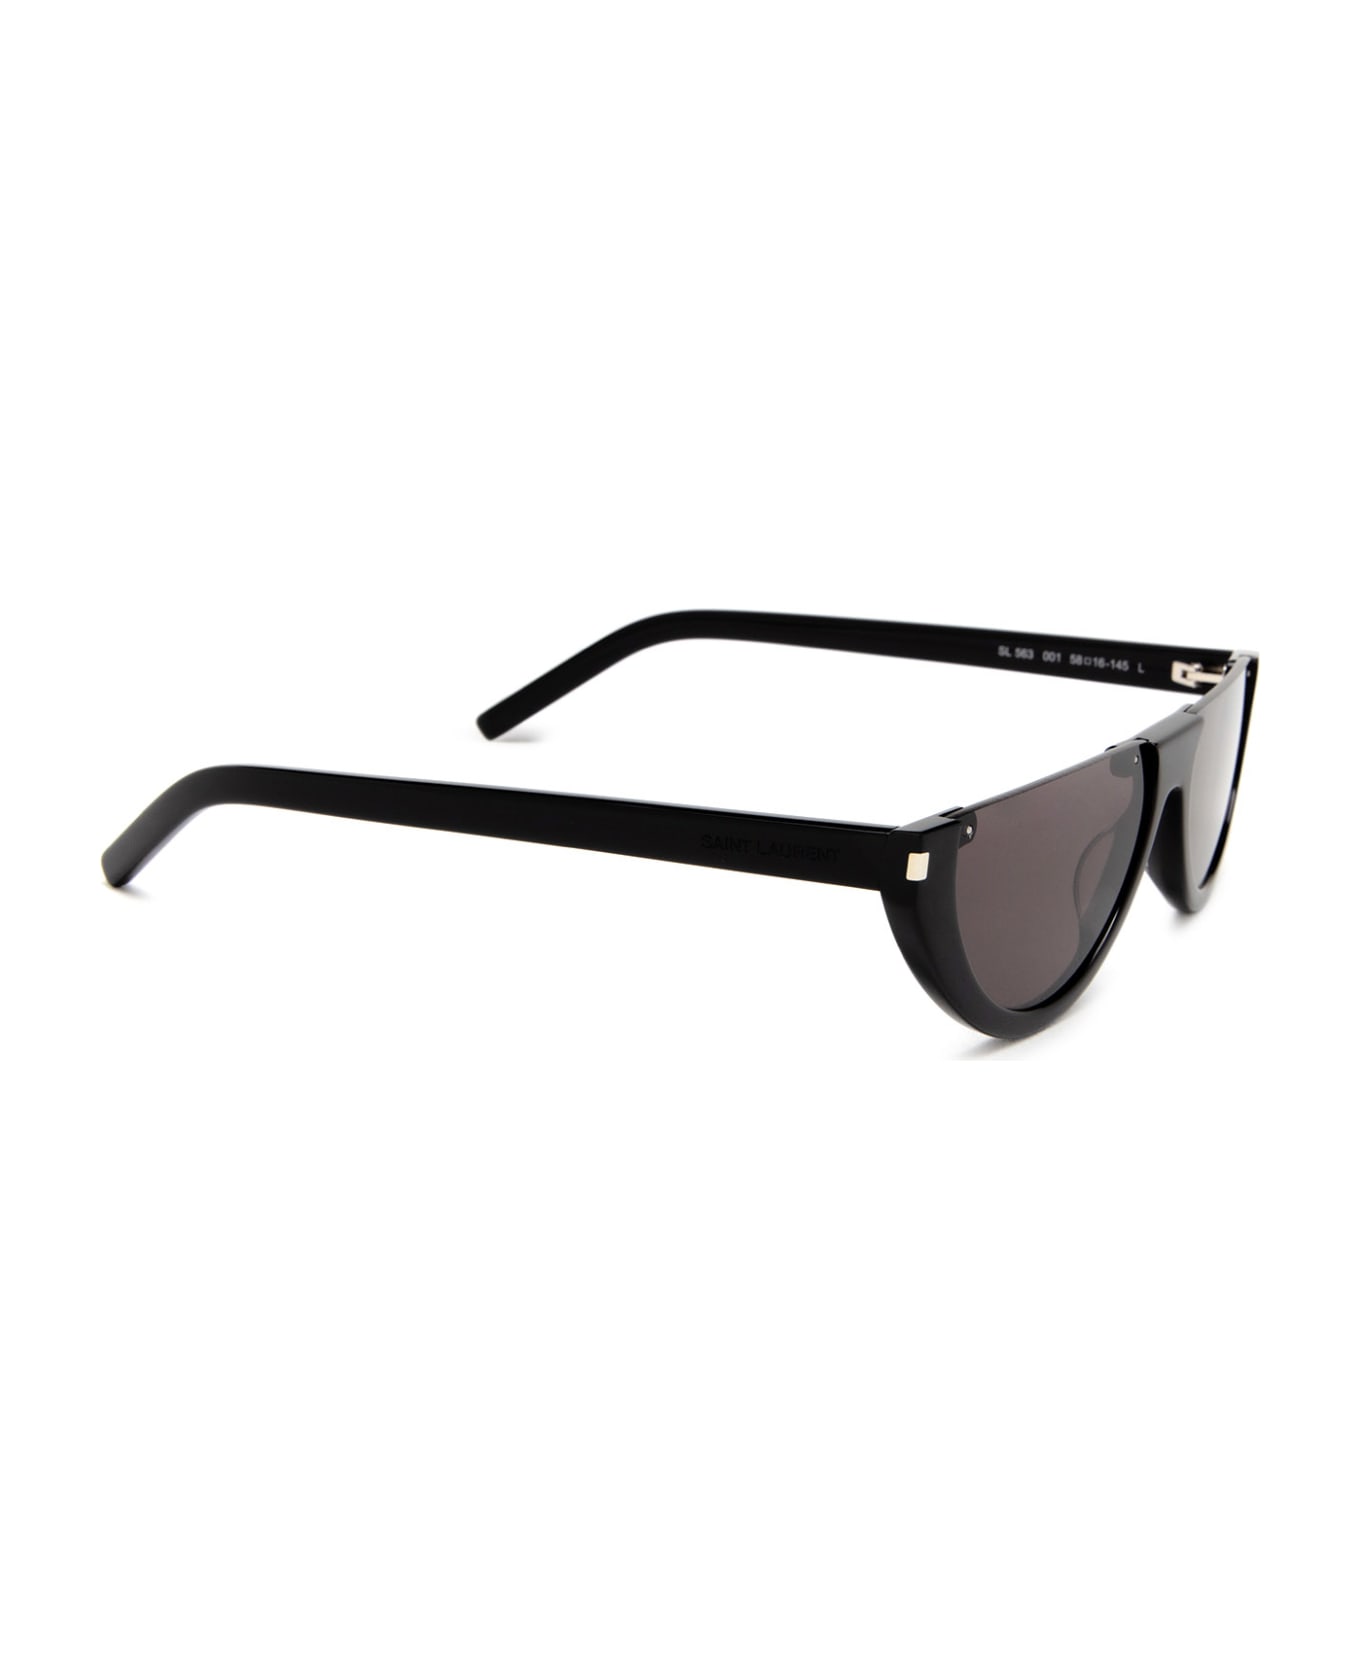 Saint Laurent Eyewear Sl 563 Black Sunglasses - Black